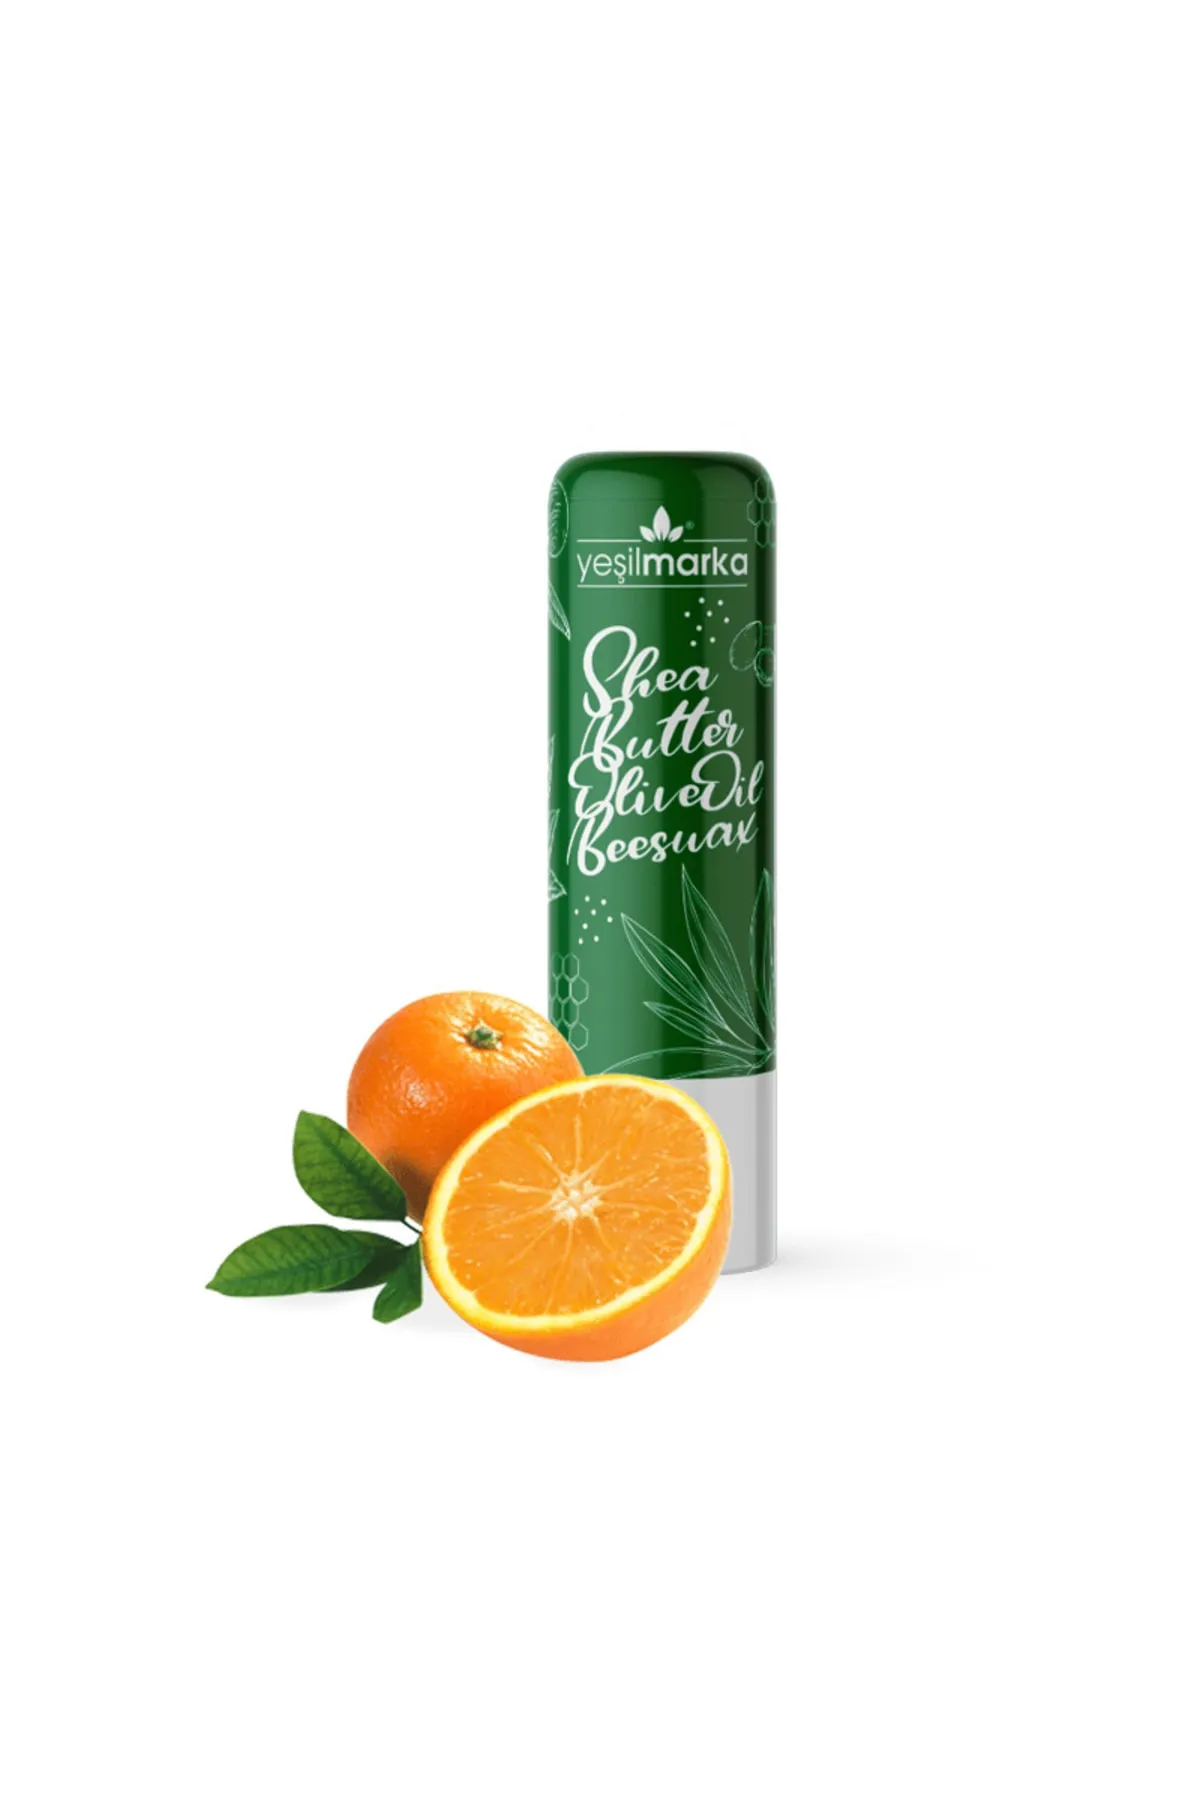 Yeşilmarka Doğal Dudak Balmı - Portakal